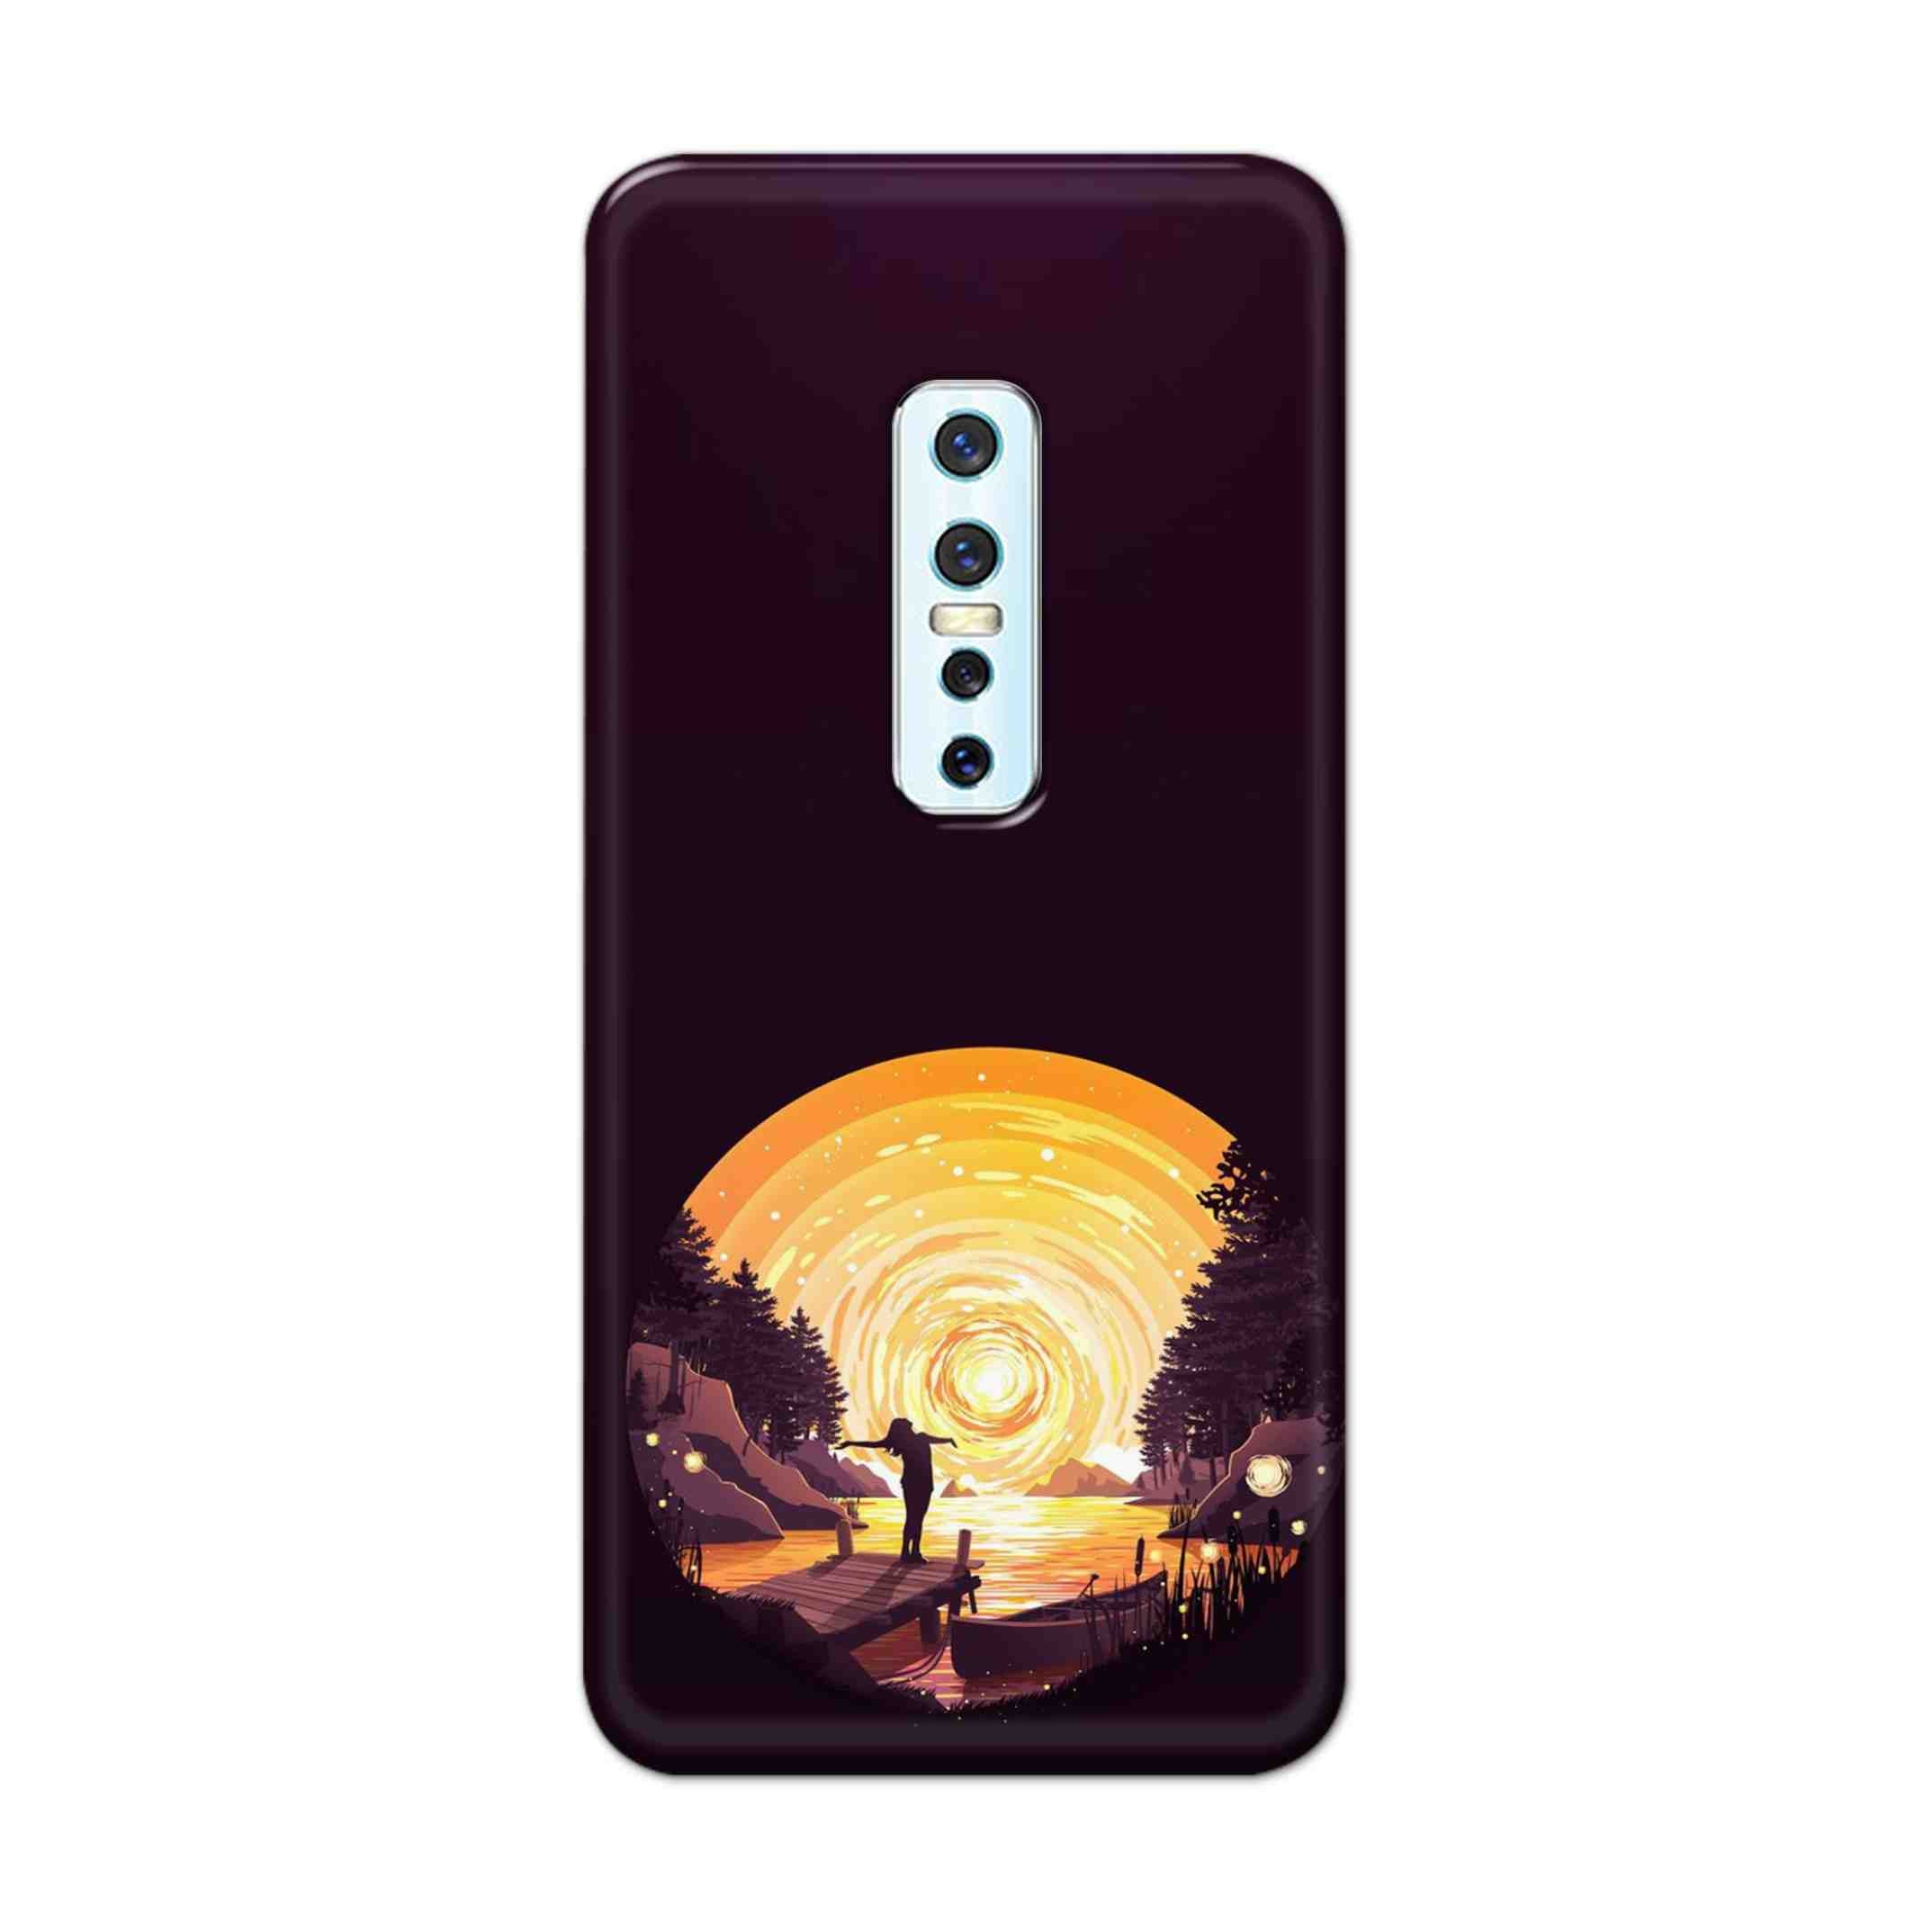 Buy Night Sunrise Hard Back Mobile Phone Case Cover For Vivo V17 Pro Online